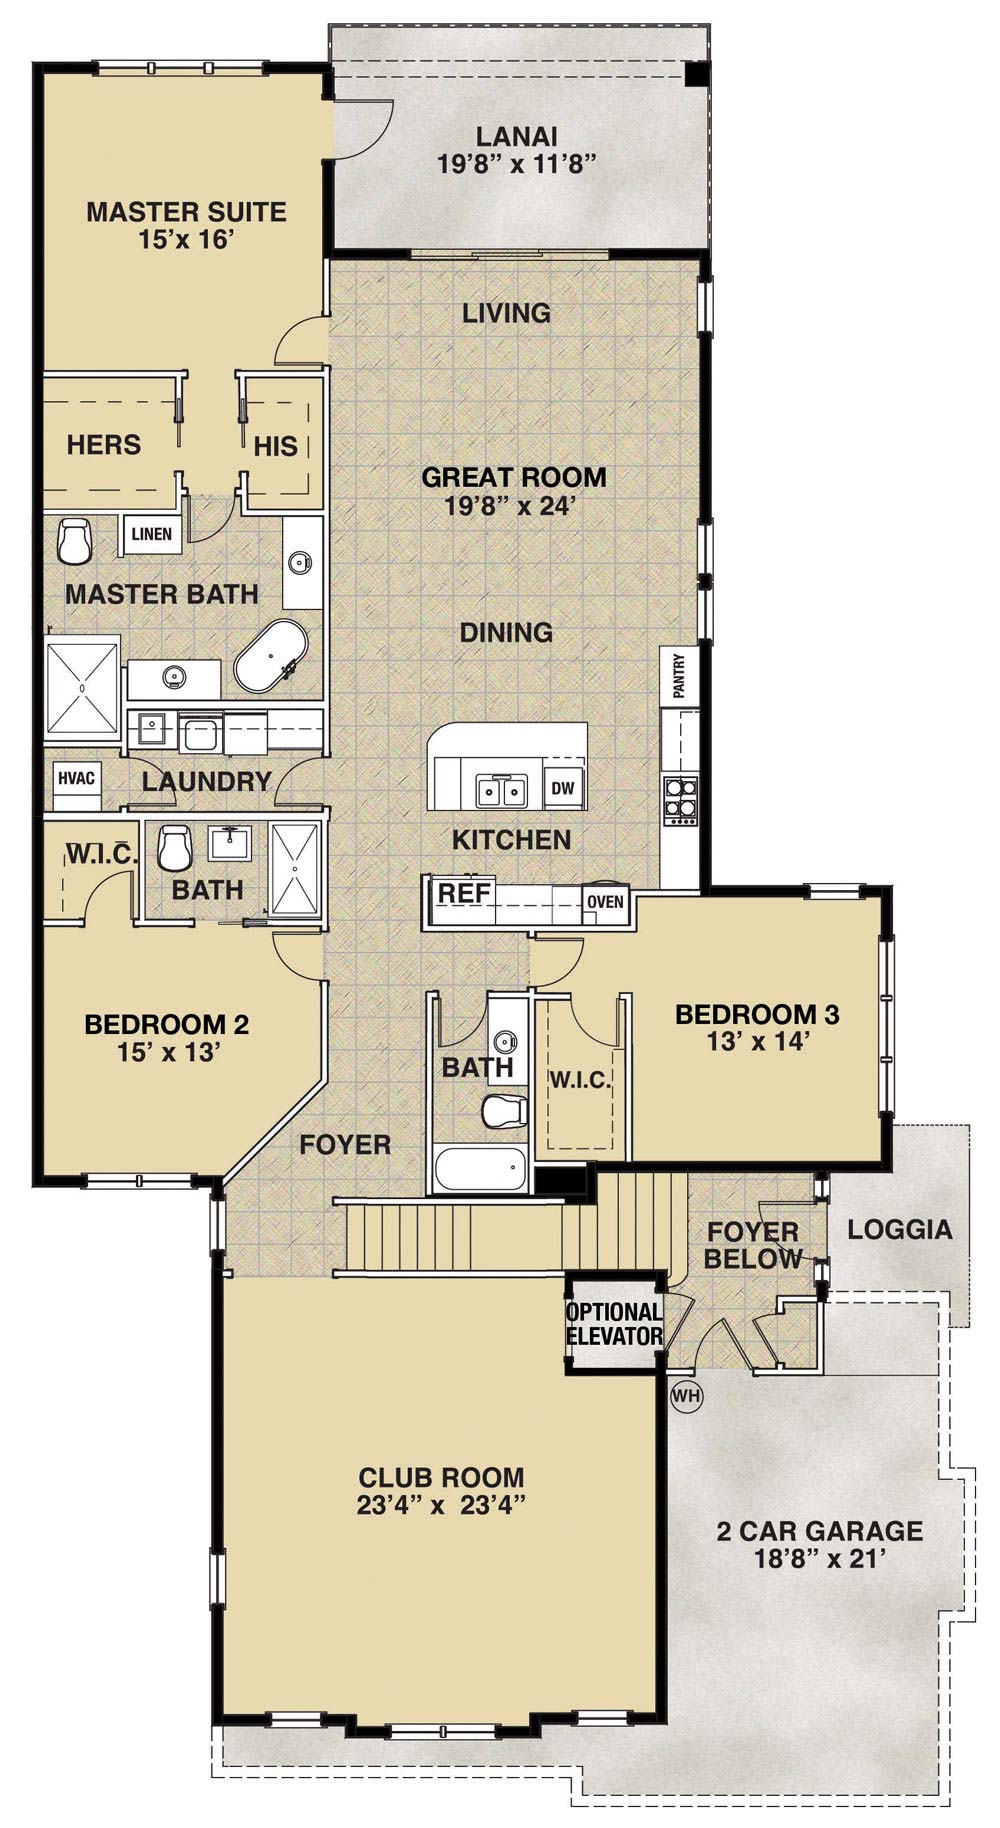 Cipriani Coach Home San Marco Floor Plan, 3 Bedroom, 3 Bath, Greatroom, Club Room with 2 Car Garage